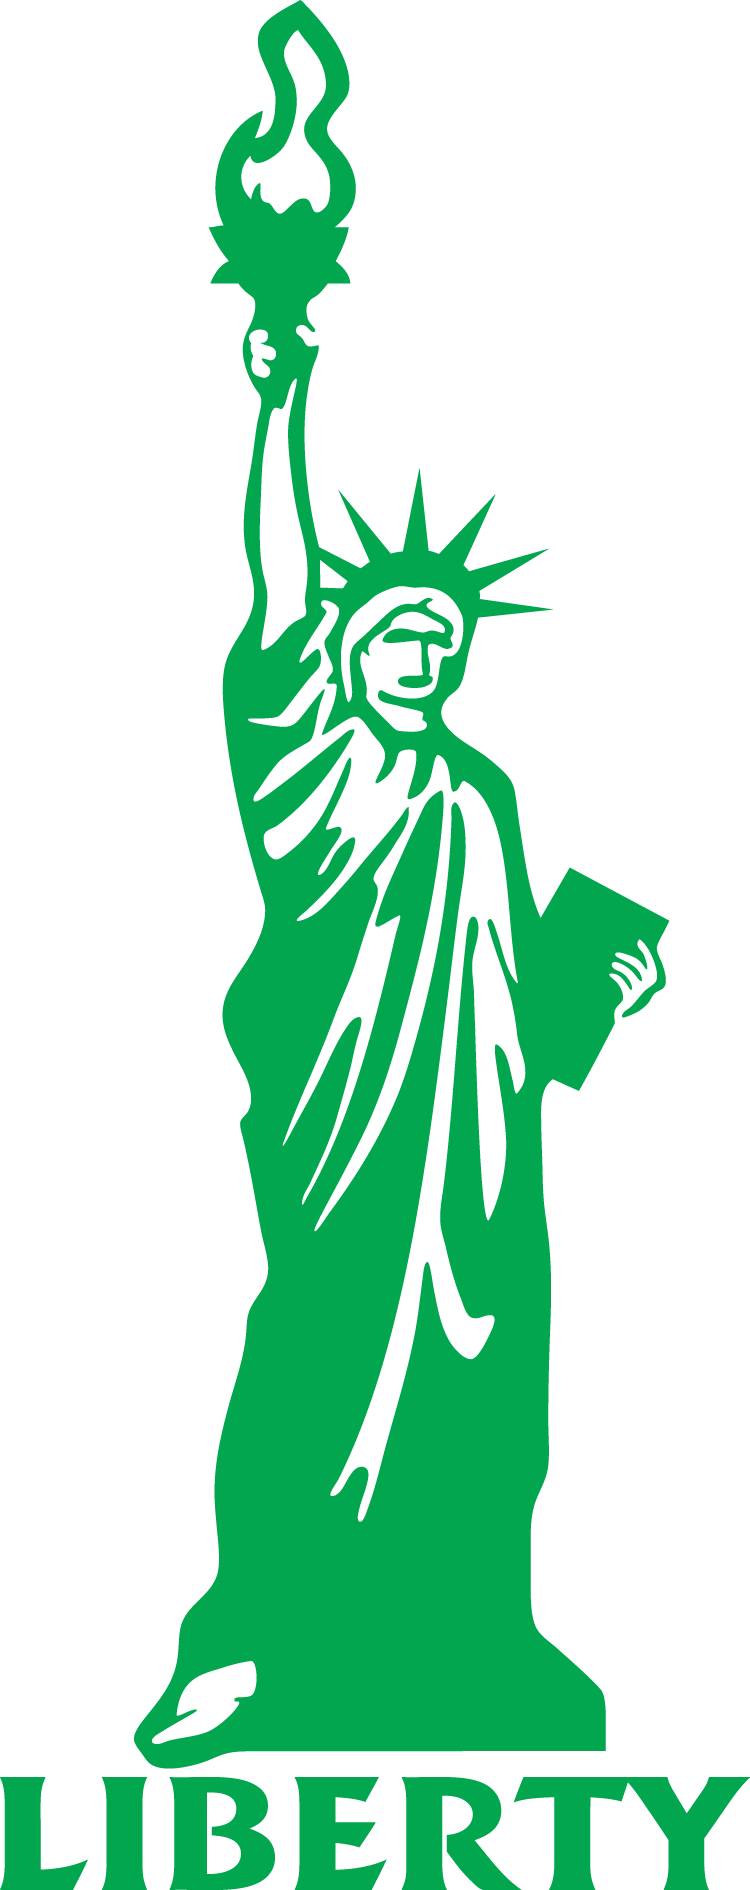 14 Statue Of Liberty Clip Art